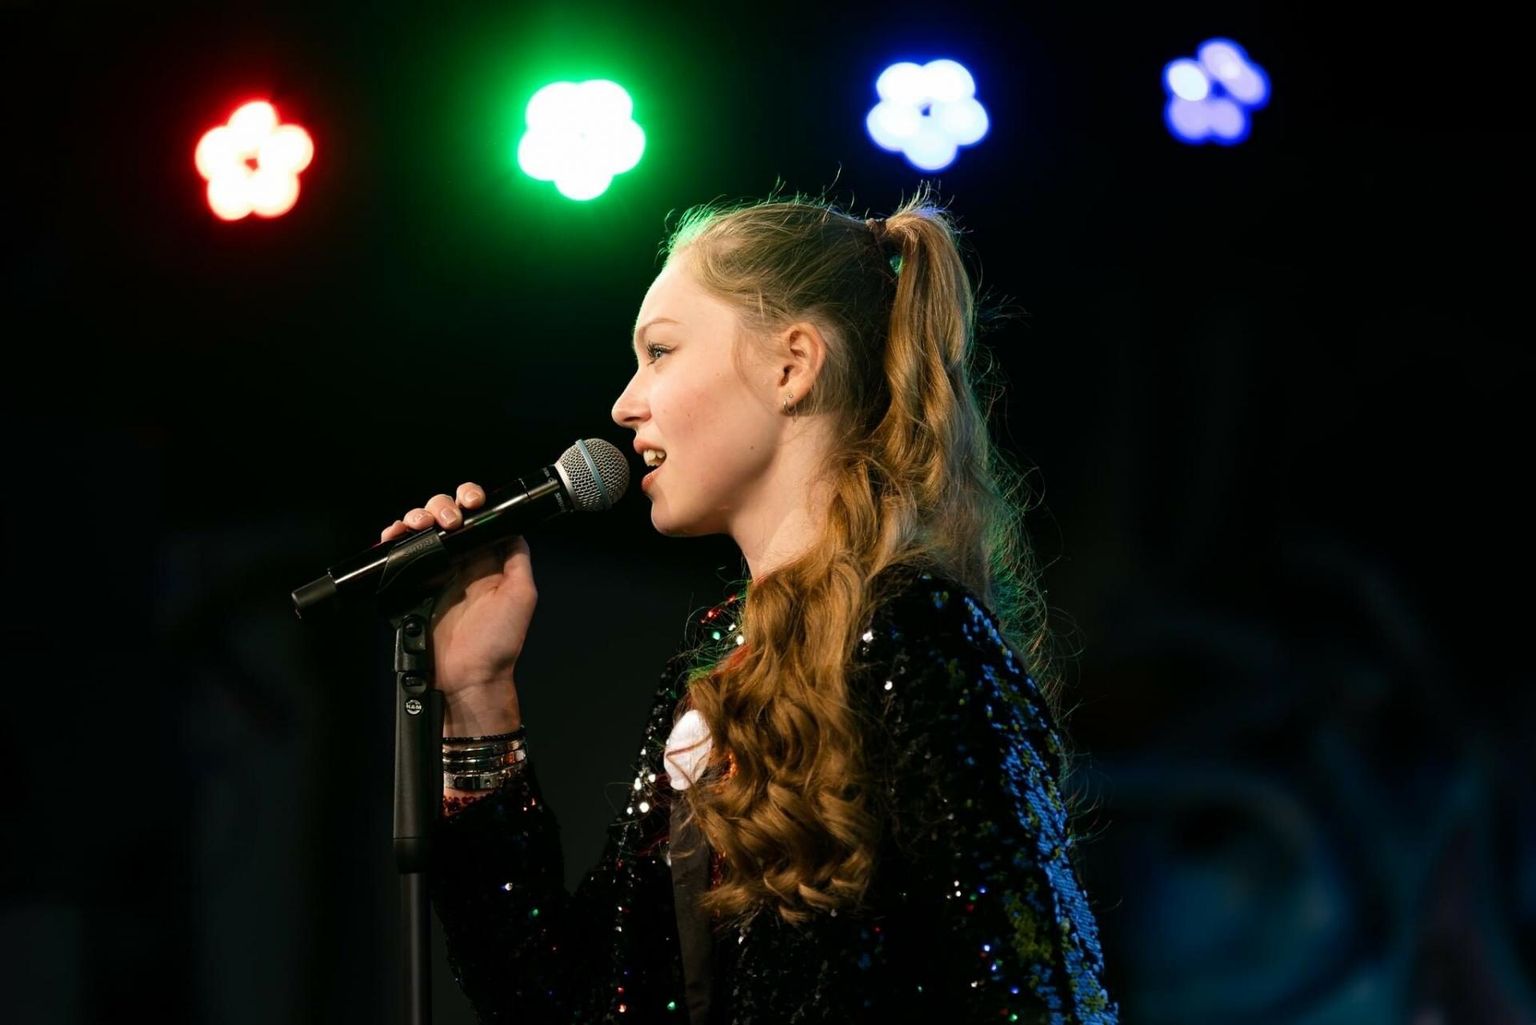 Nädalavahetusel Kuressaares peetud "Solistica" finaalvõistluse võitis VII–IX klassi arvestuses Marcella Emilie Soonik, kes harjutab Hedi-Kai Pai juhendamisel laulmist muusikastuudios Cantabile.